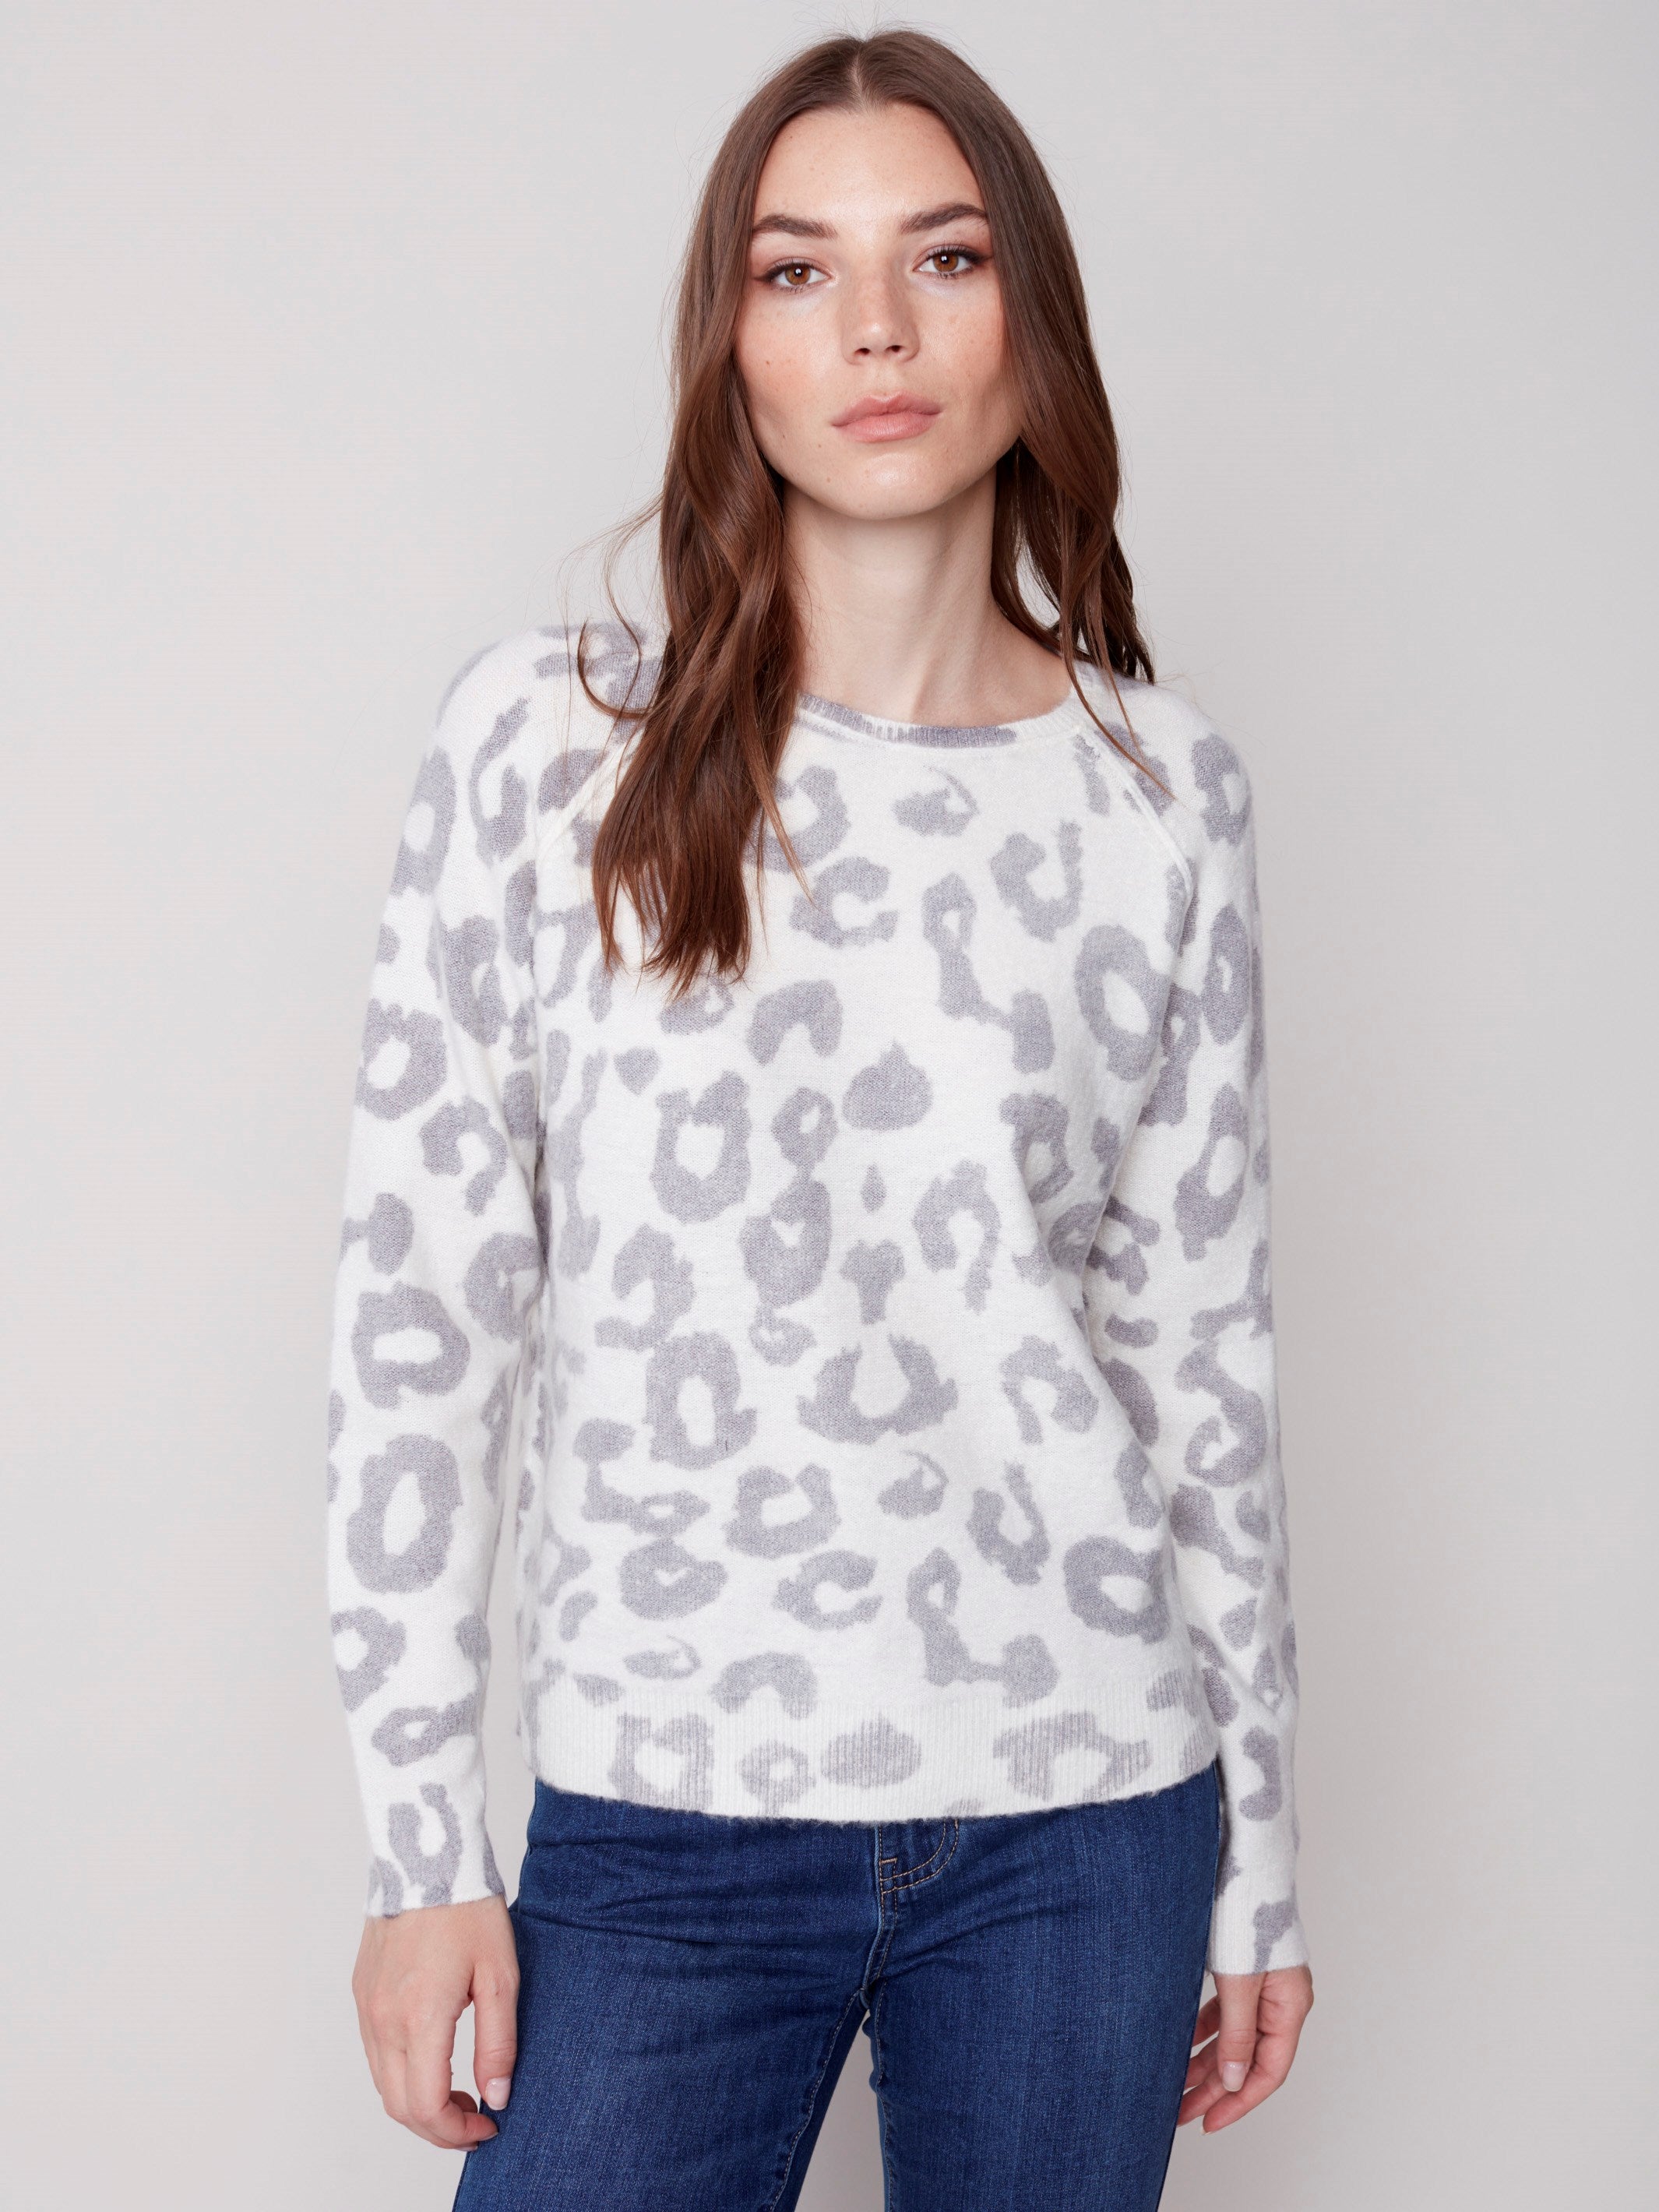 Reversible Animal Print Sweater - Animal